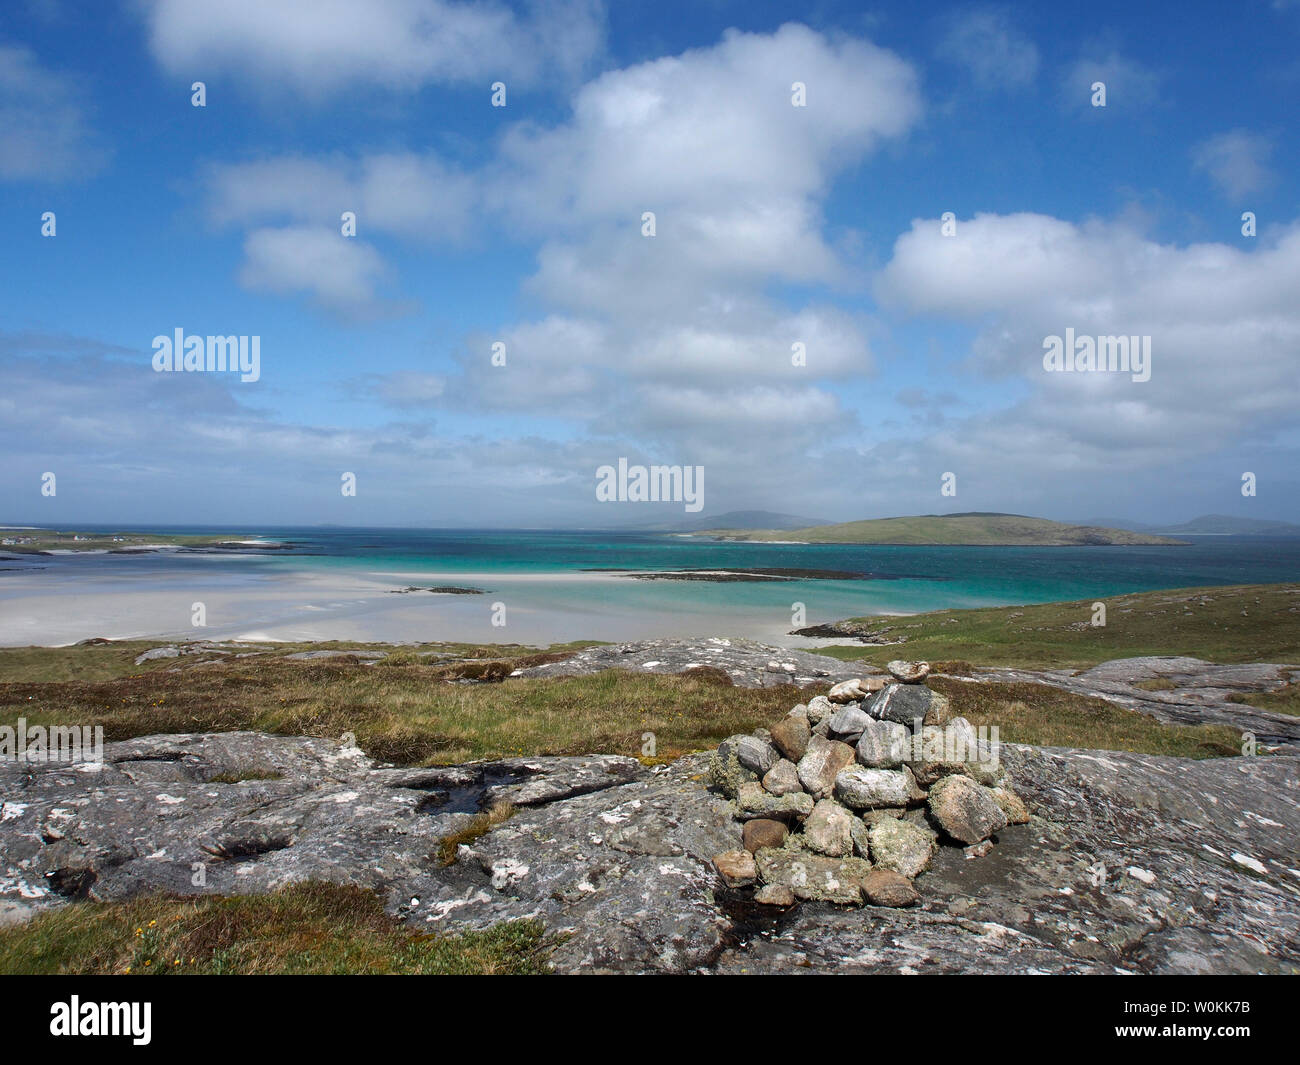 Orasaigh isola di marea, nel nord della barra, Scozia Foto Stock